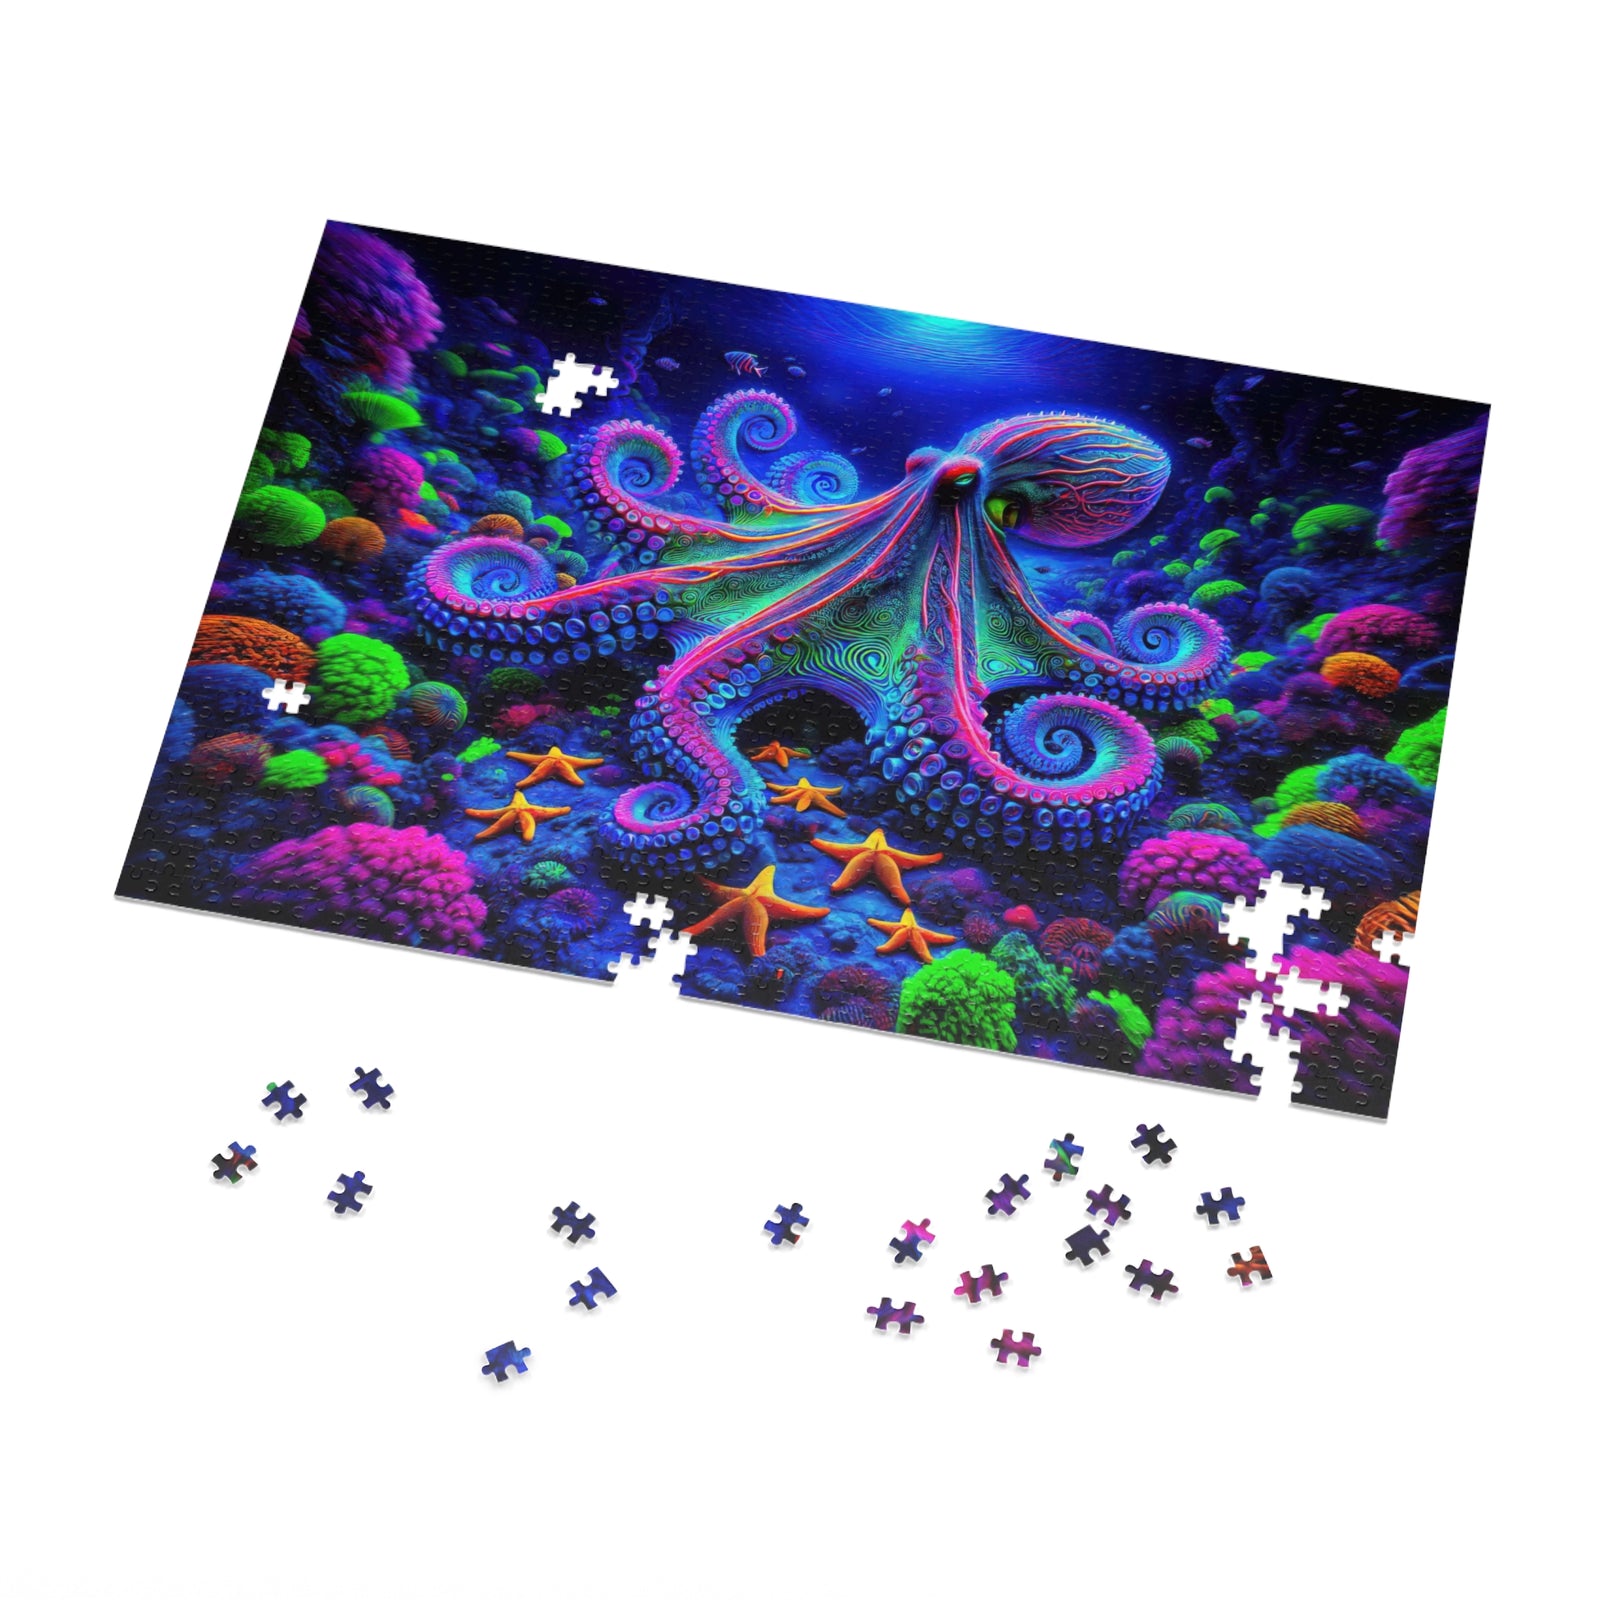 Les profondeurs Technicolor d'un puzzle de poulpe